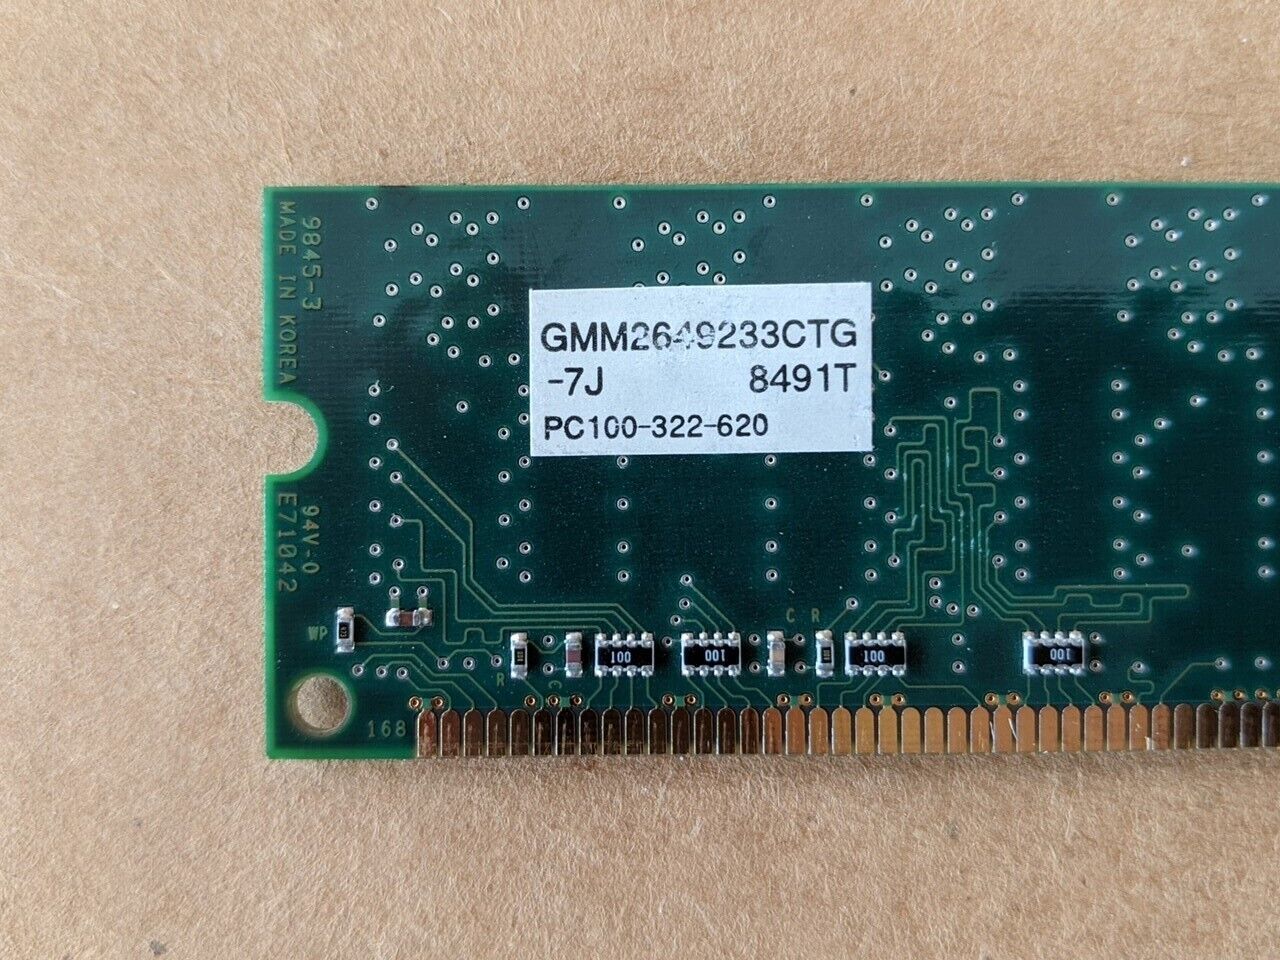 128MB 2x64MB PC-100 GMM2649233CTG-7J HYNIX LGS Memory Kit PC100 3.3V SDRAM SDR